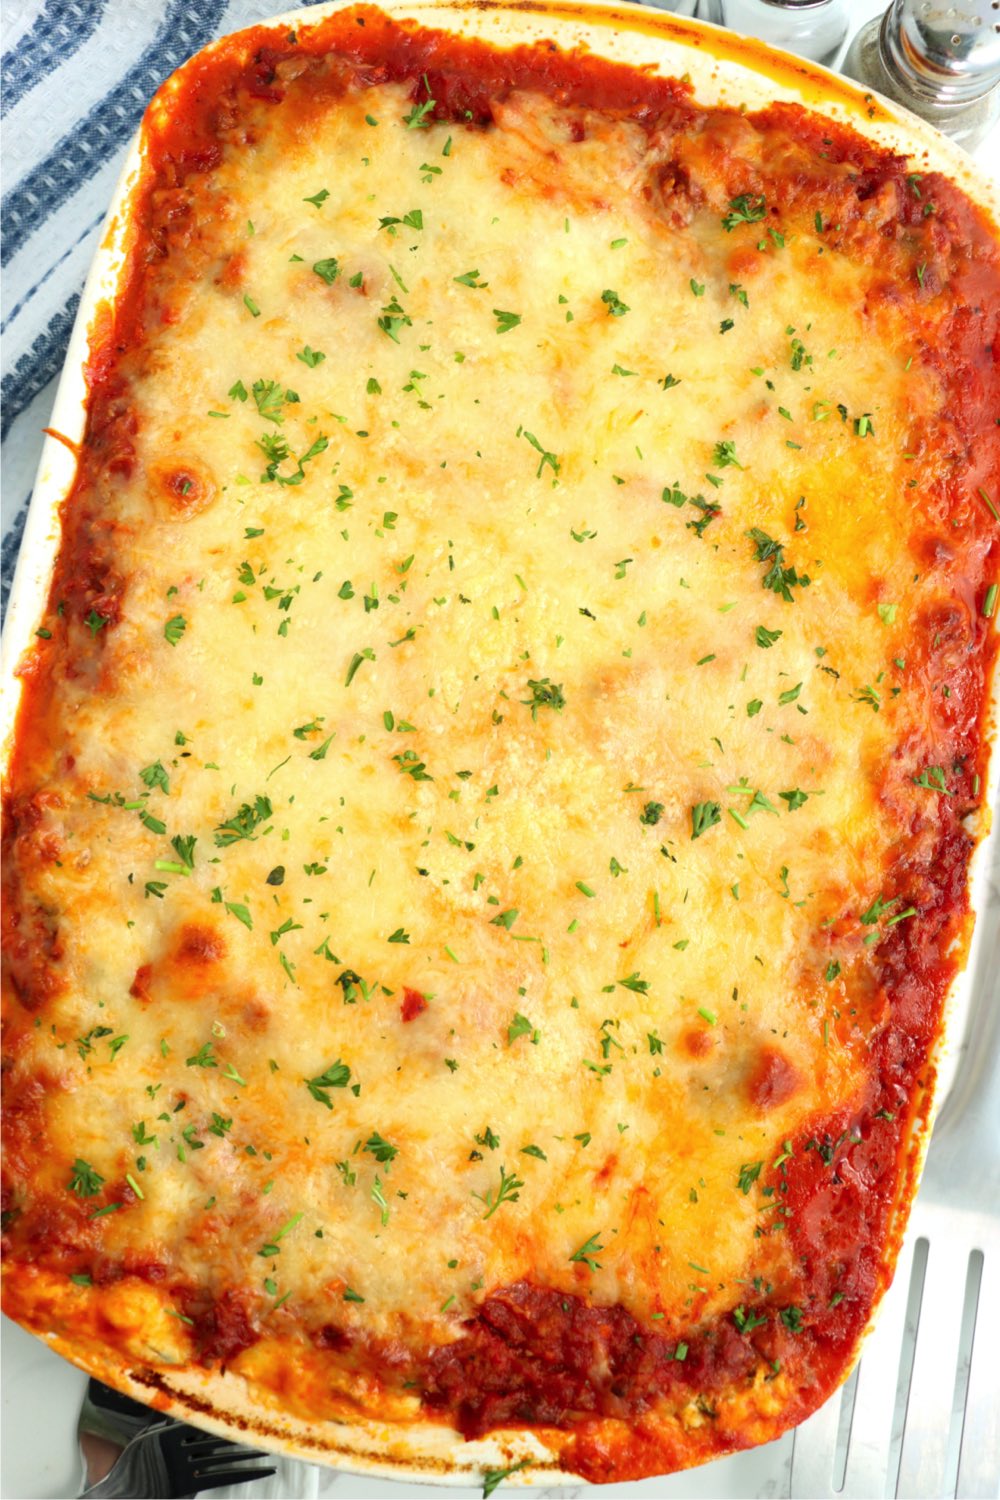 pan of cheesy lasagna